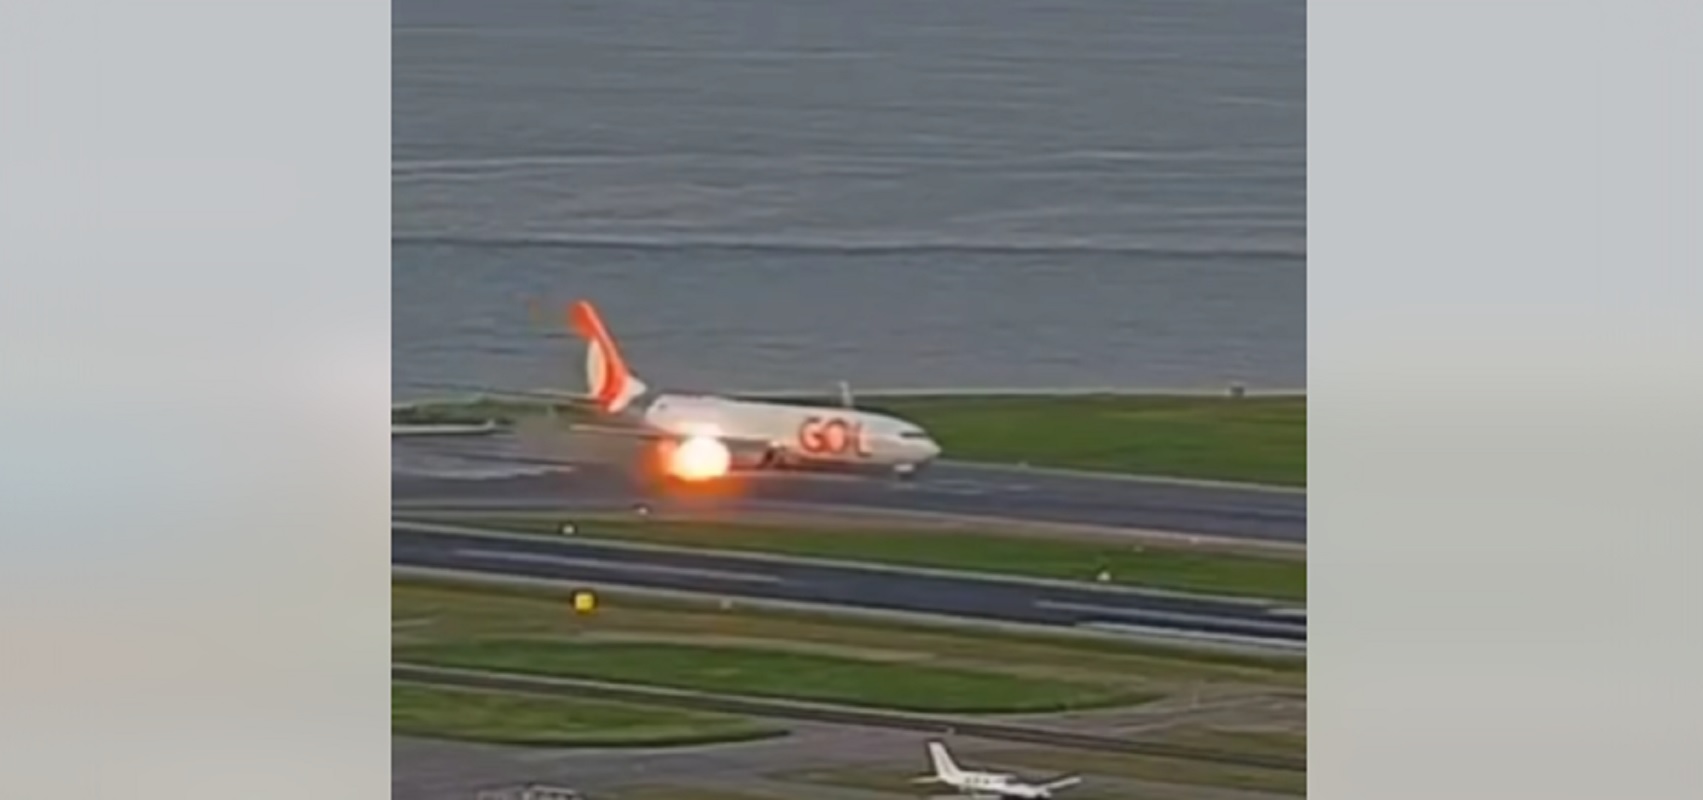 le réacteur de l'avion a pris feu au décollage 